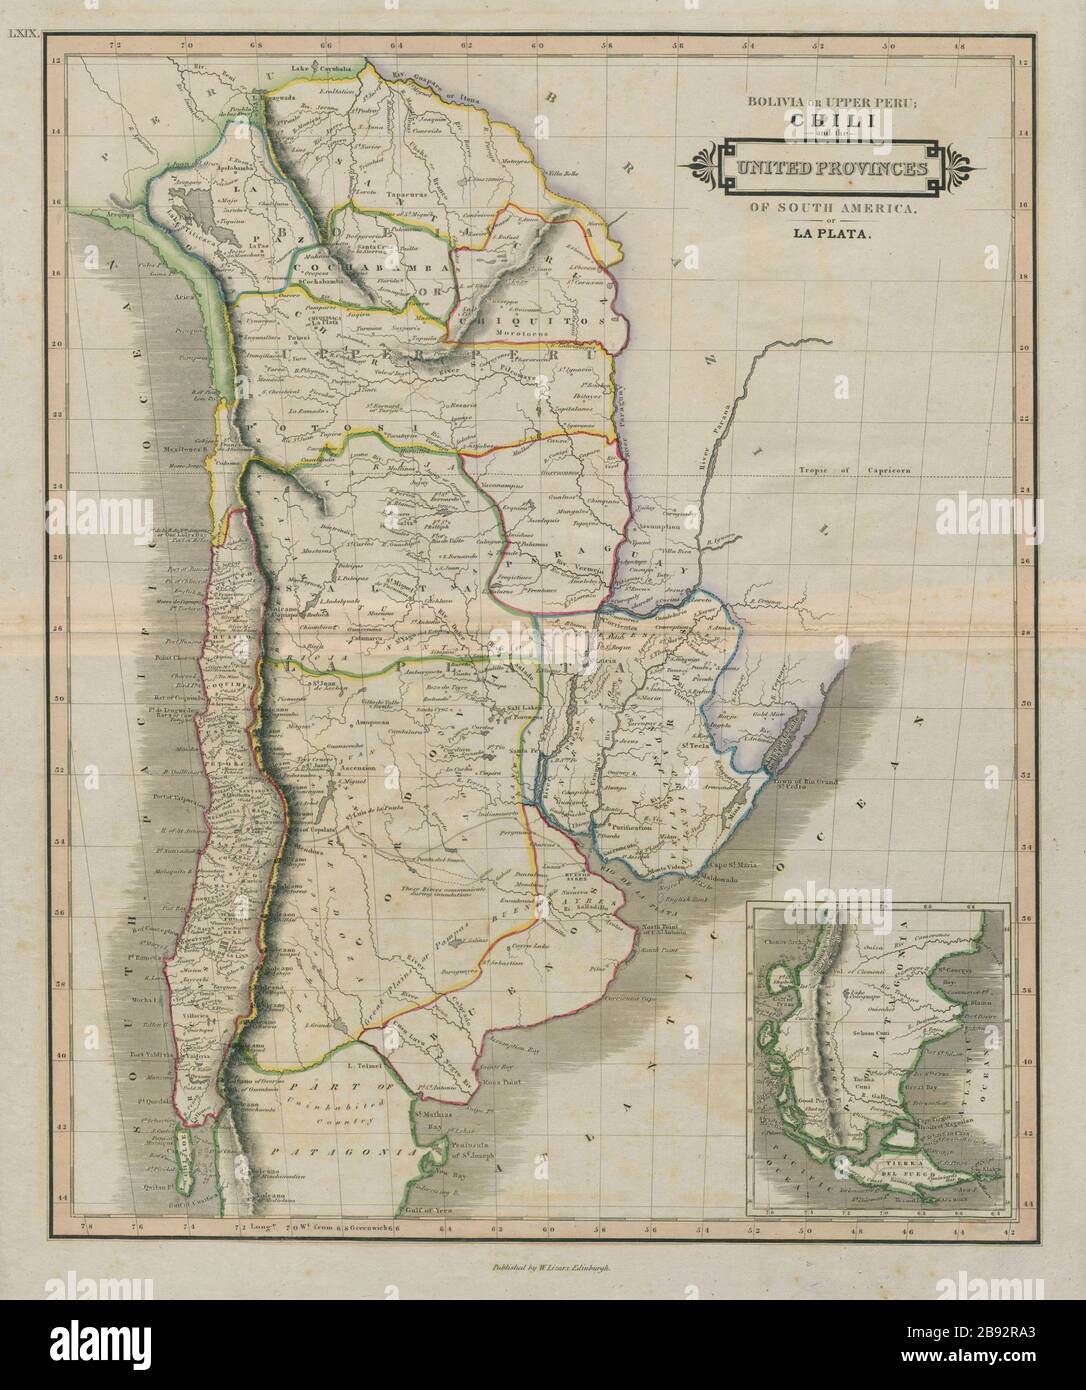 Bolivia o Perù superiore. Chili. Province unite di la Plata. LIZARS 1842 mappa Foto Stock